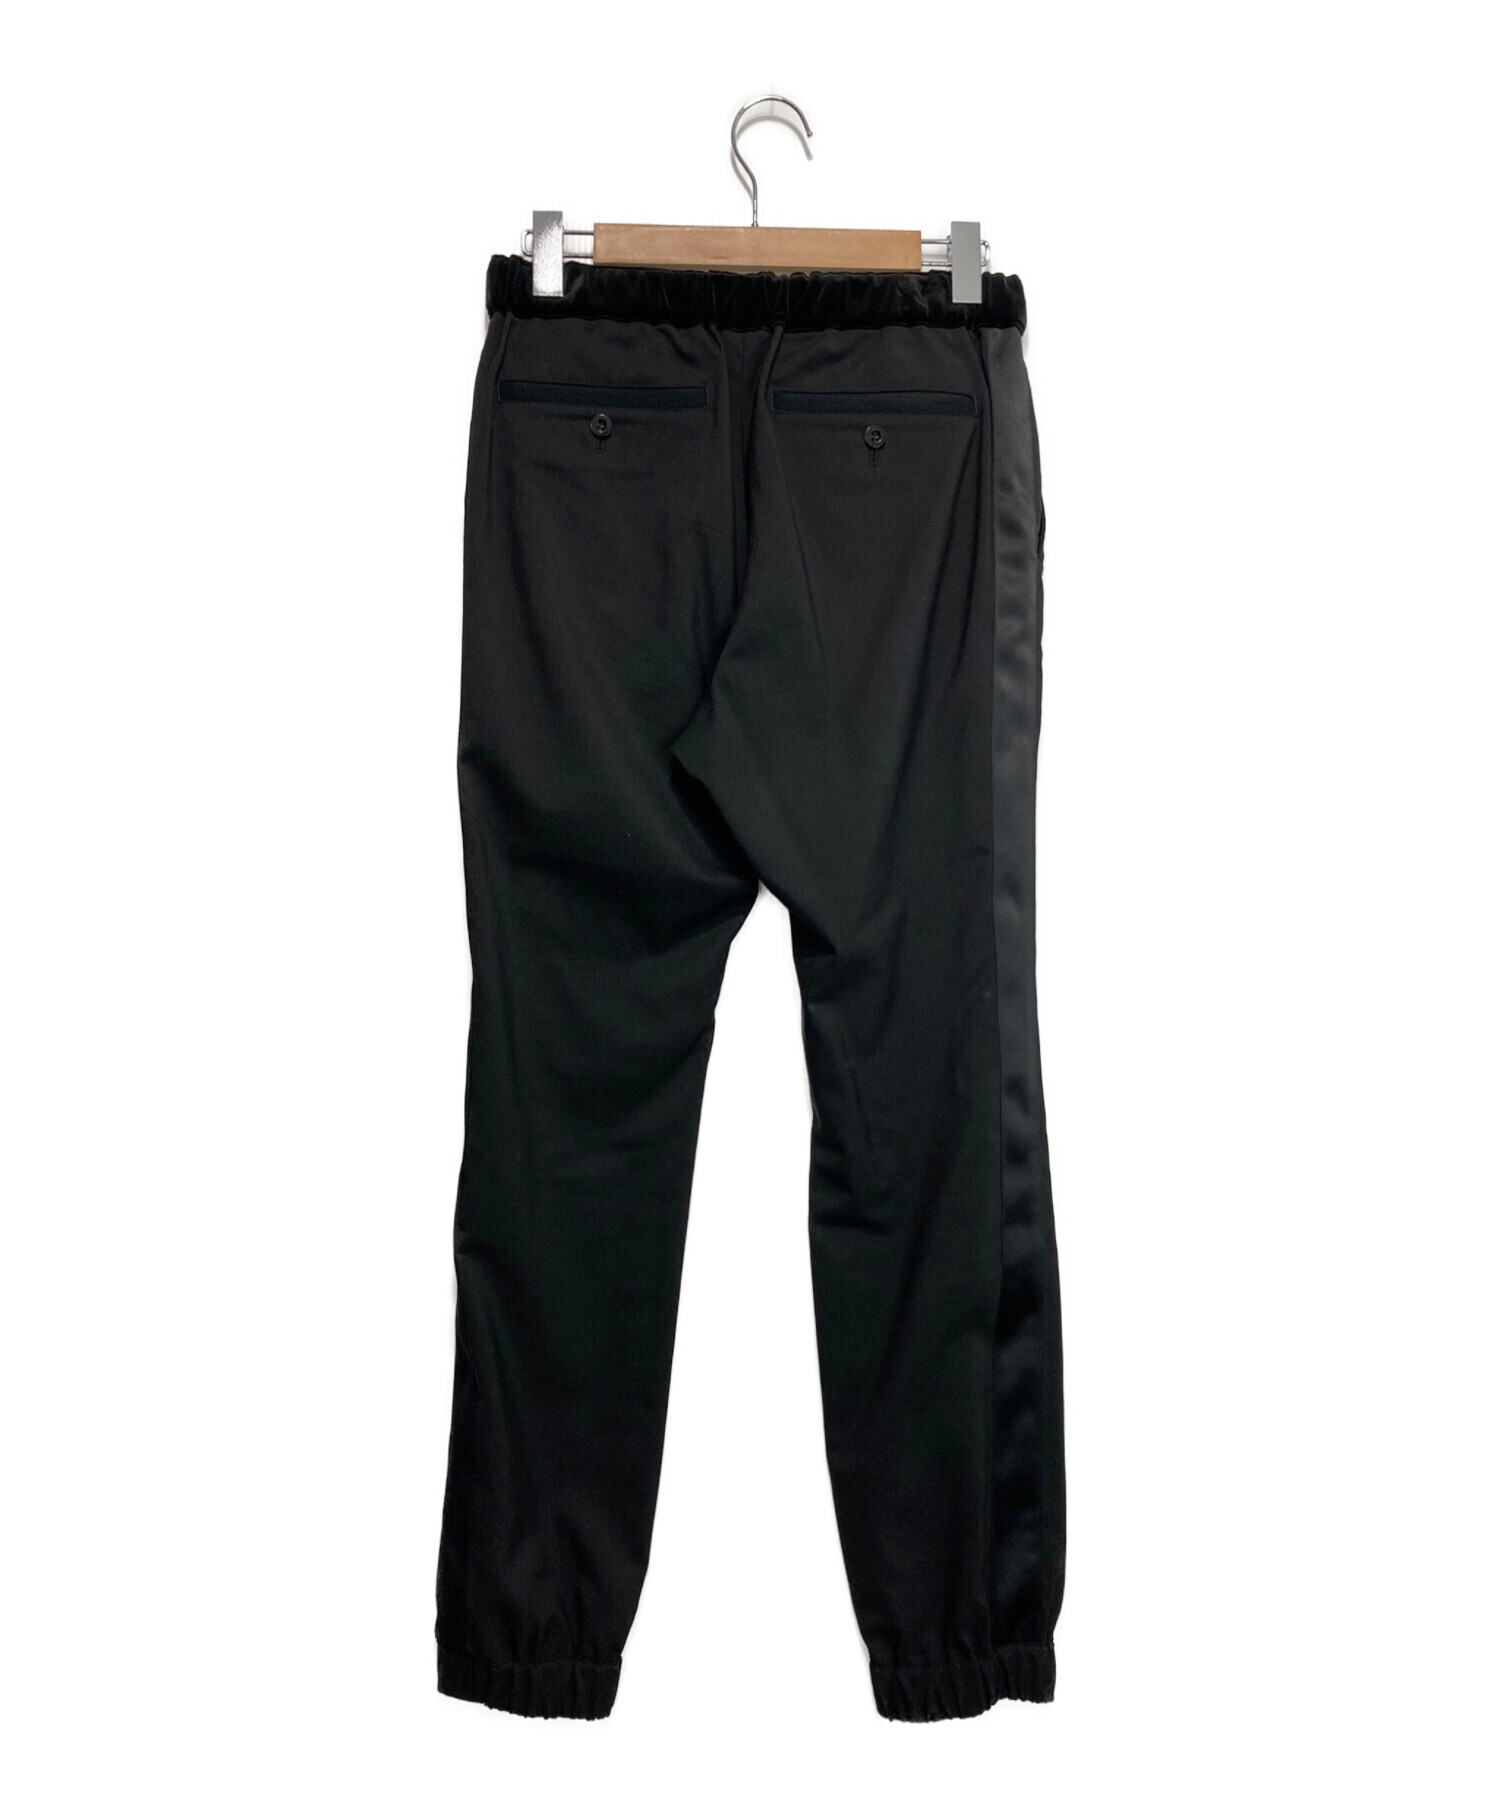 sacai Suiting Pants ブラック サイズ 1 サカイ - スラックス